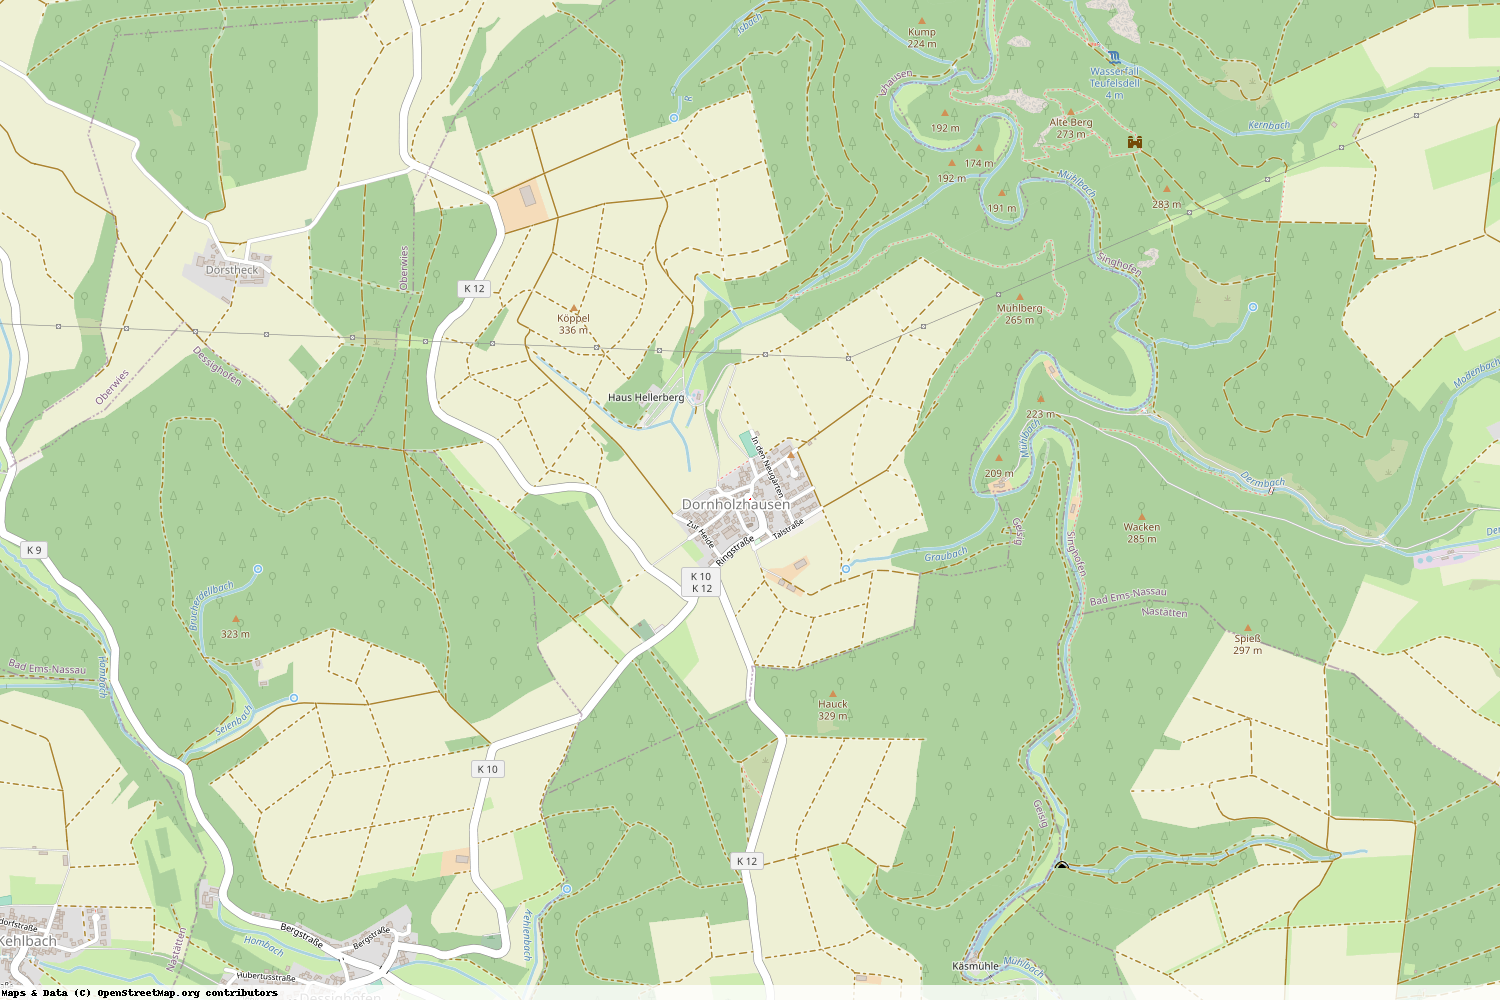 Ist gerade Stromausfall in Rheinland-Pfalz - Rhein-Lahn-Kreis - Dornholzhausen?